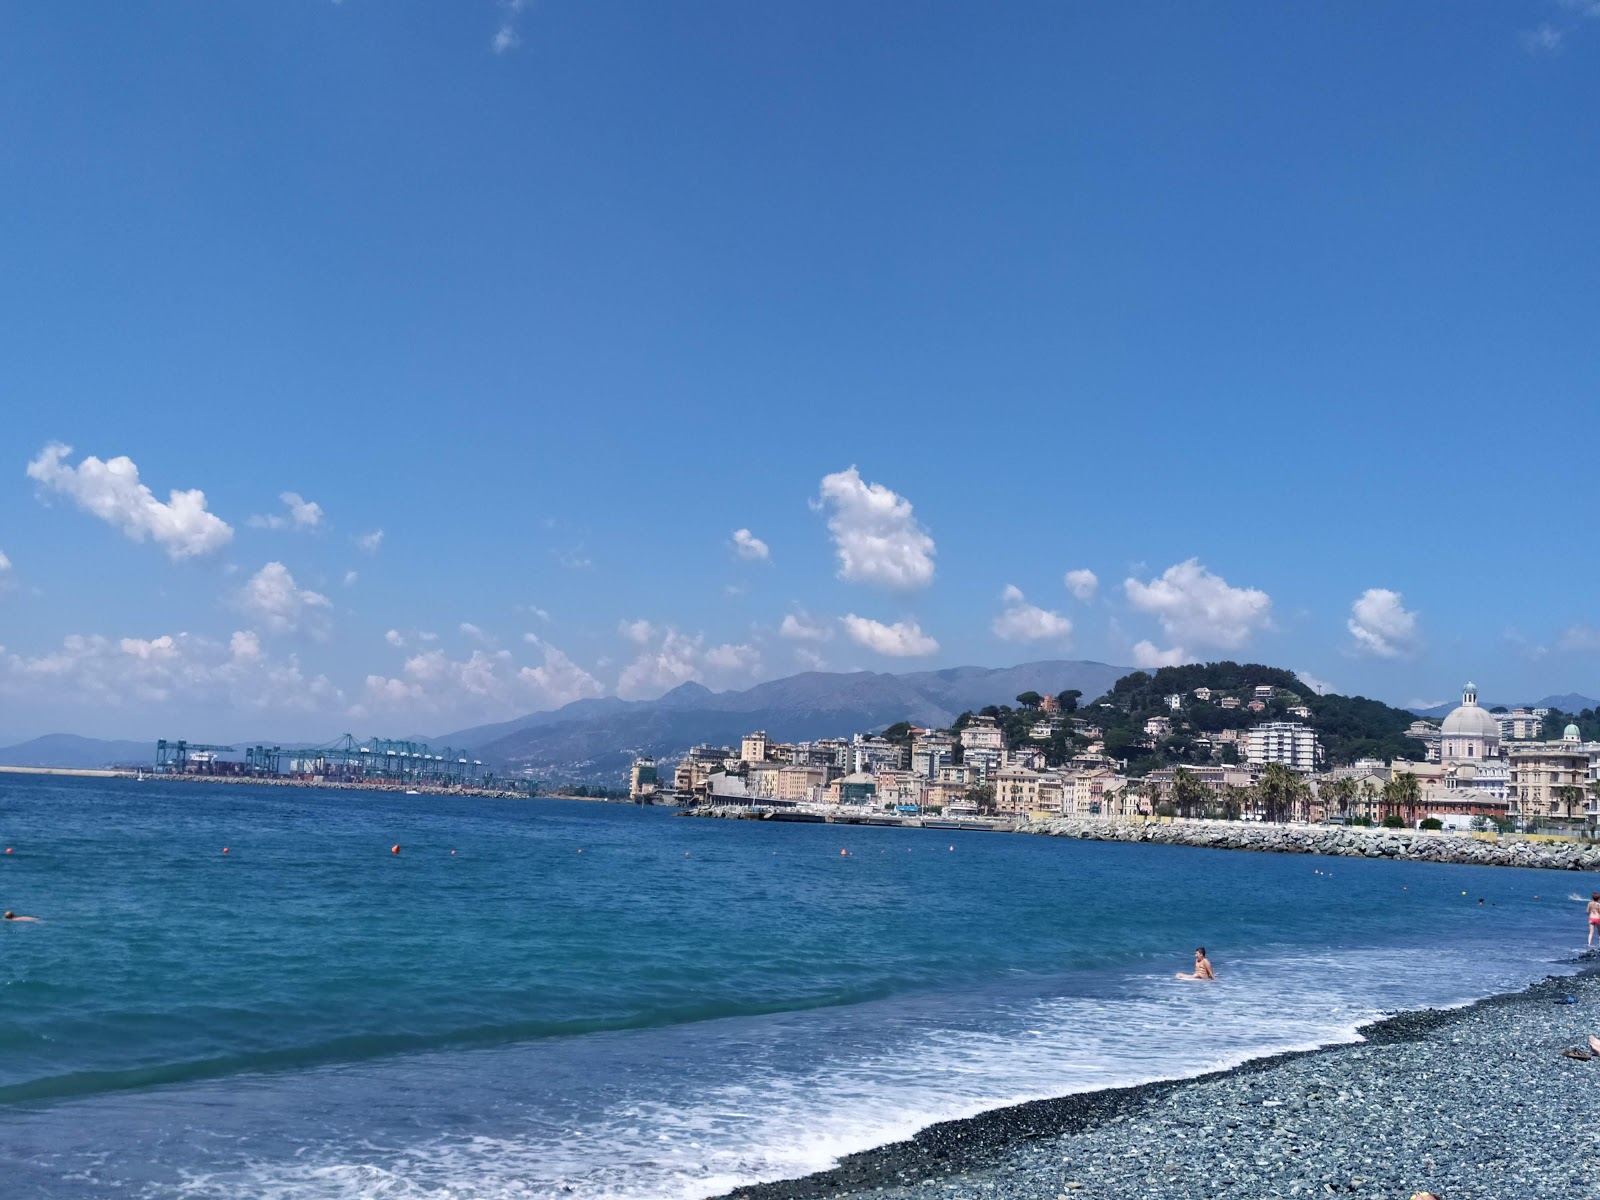 Foto av Spiaggia Multedo - populär plats bland avkopplingskännare